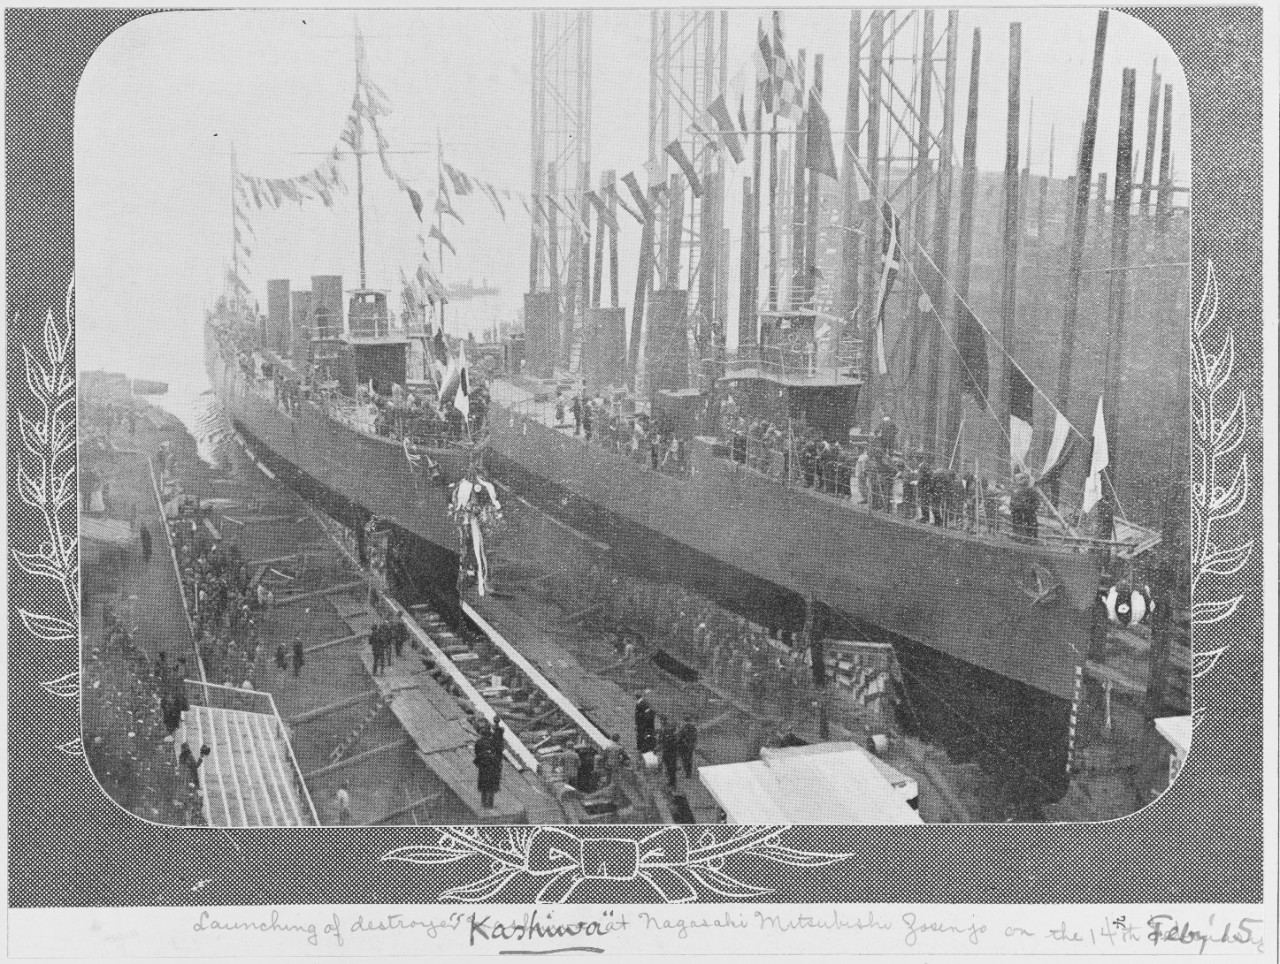 Launching of Japanese Destroyer: KASHIWA, February 14, 1915